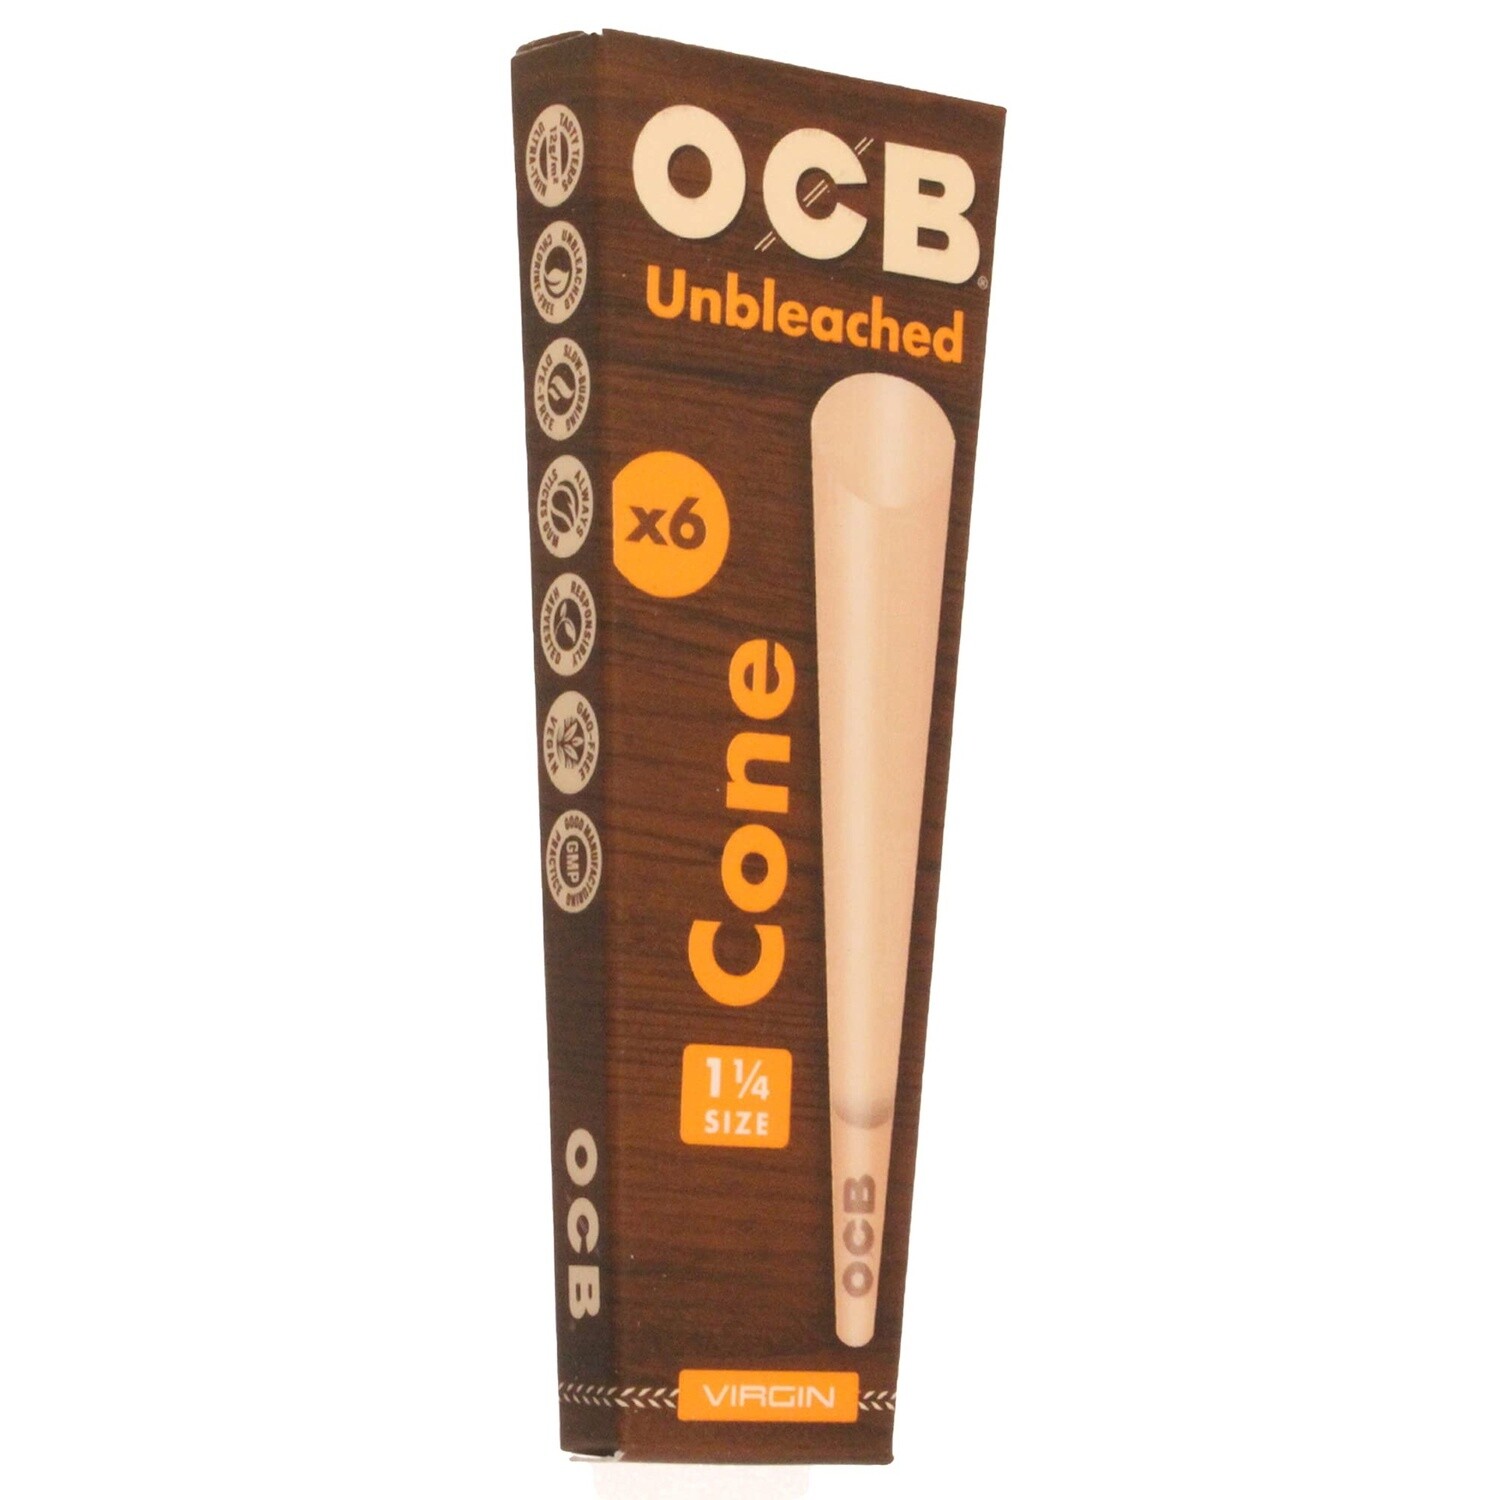 OCB Cones, Type: 1 1/4 Unbleached (6ct)